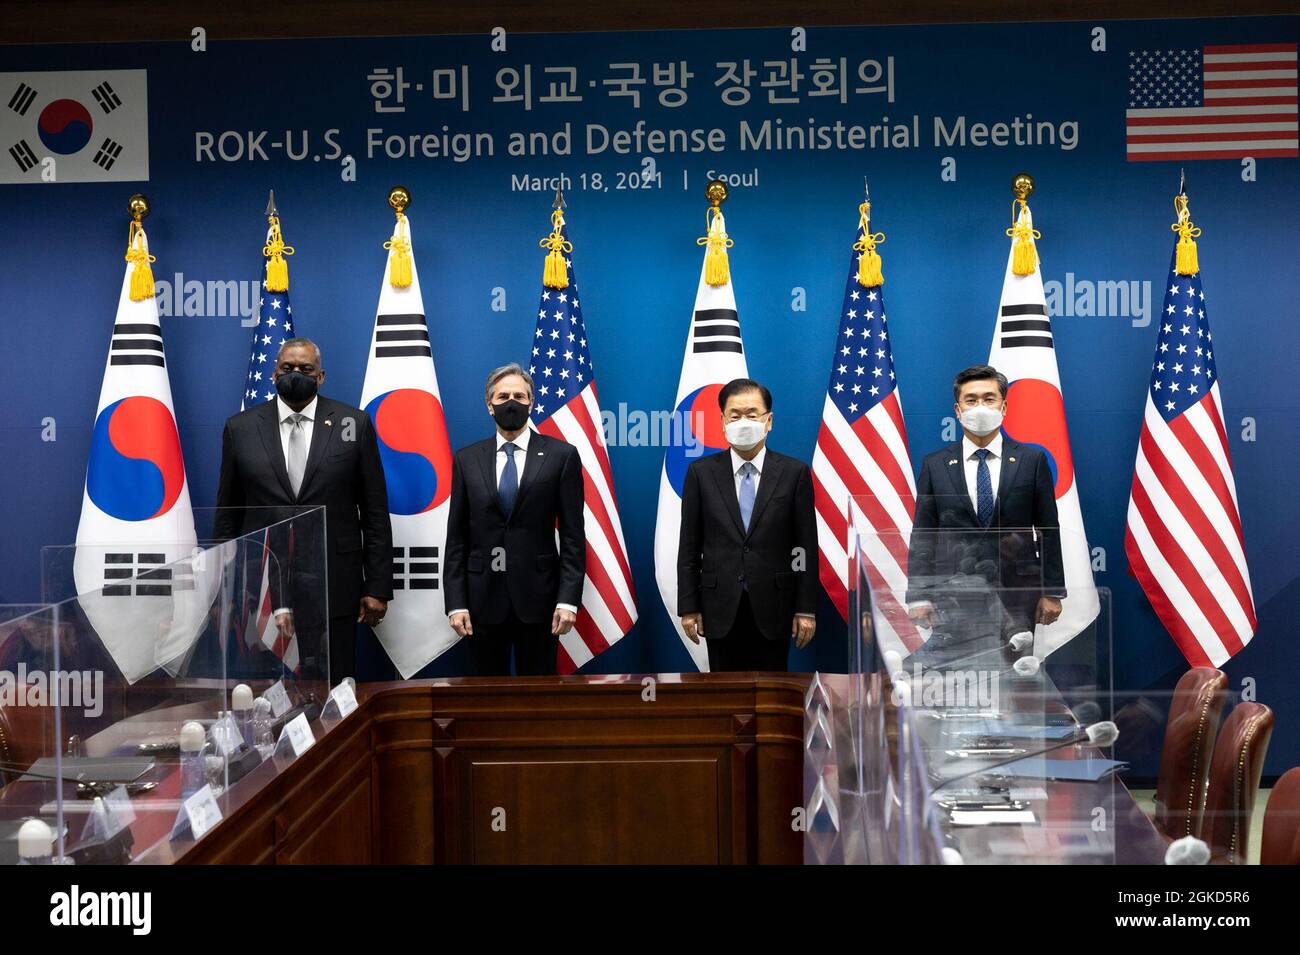 Il Segretario di Stato Antony J. Blinken e il Segretario della Difesa Lloyd J. Austin III incontrano i loro omologhi sudcoreani, il Ministro degli Affari Esteri Chung EUI-yong e il Ministro della Difesa nazionale Suh Wook, Seul, 18 marzo 2021. Foto Stock